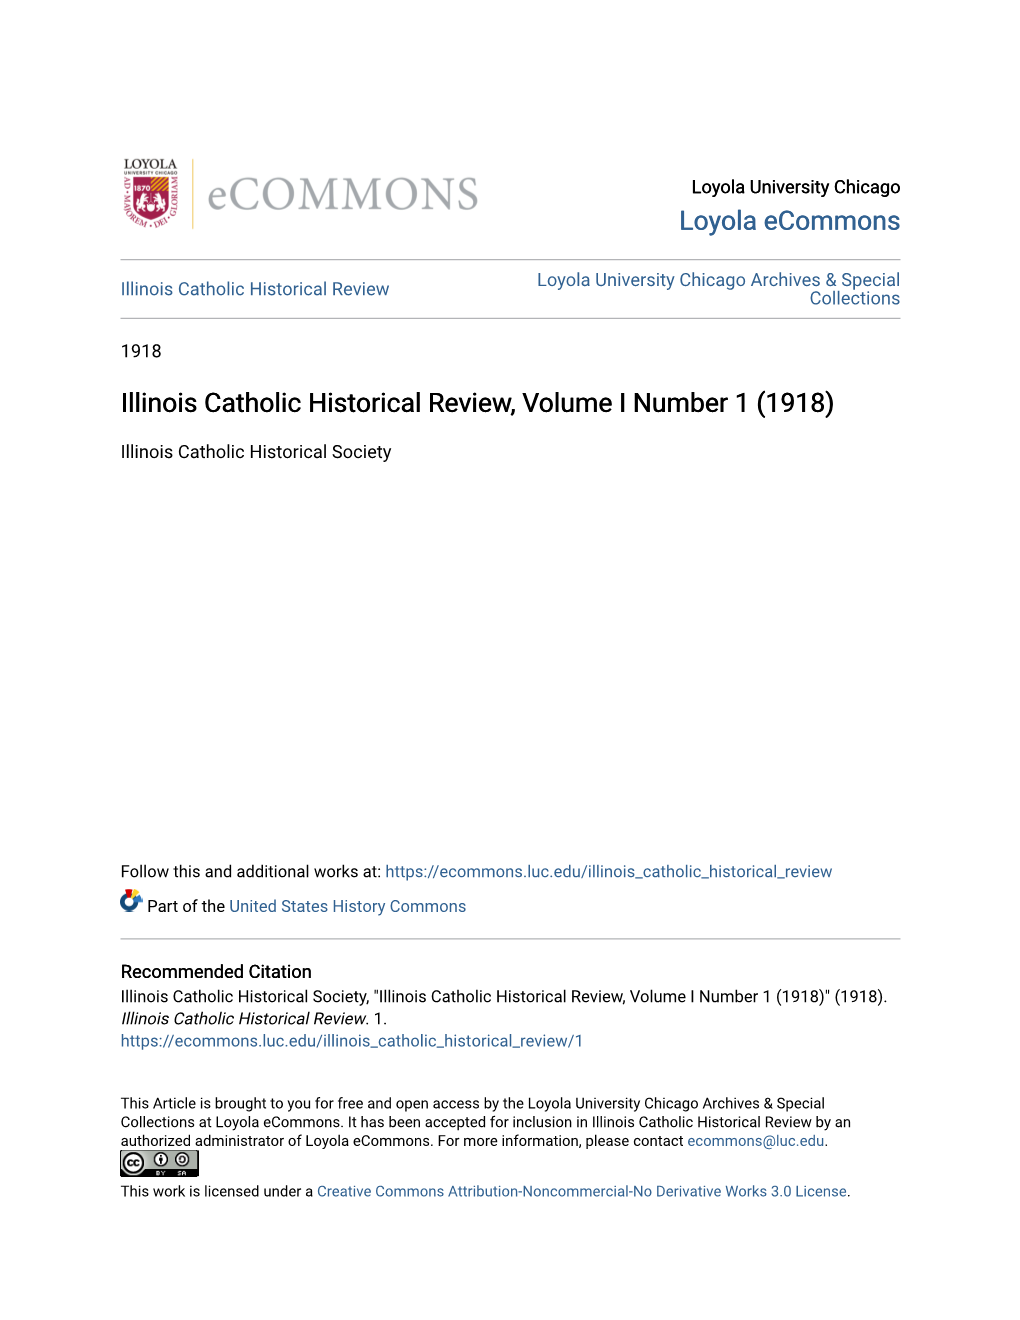 Illinois Catholic Historical Review, Volume I Number 1 (1918)